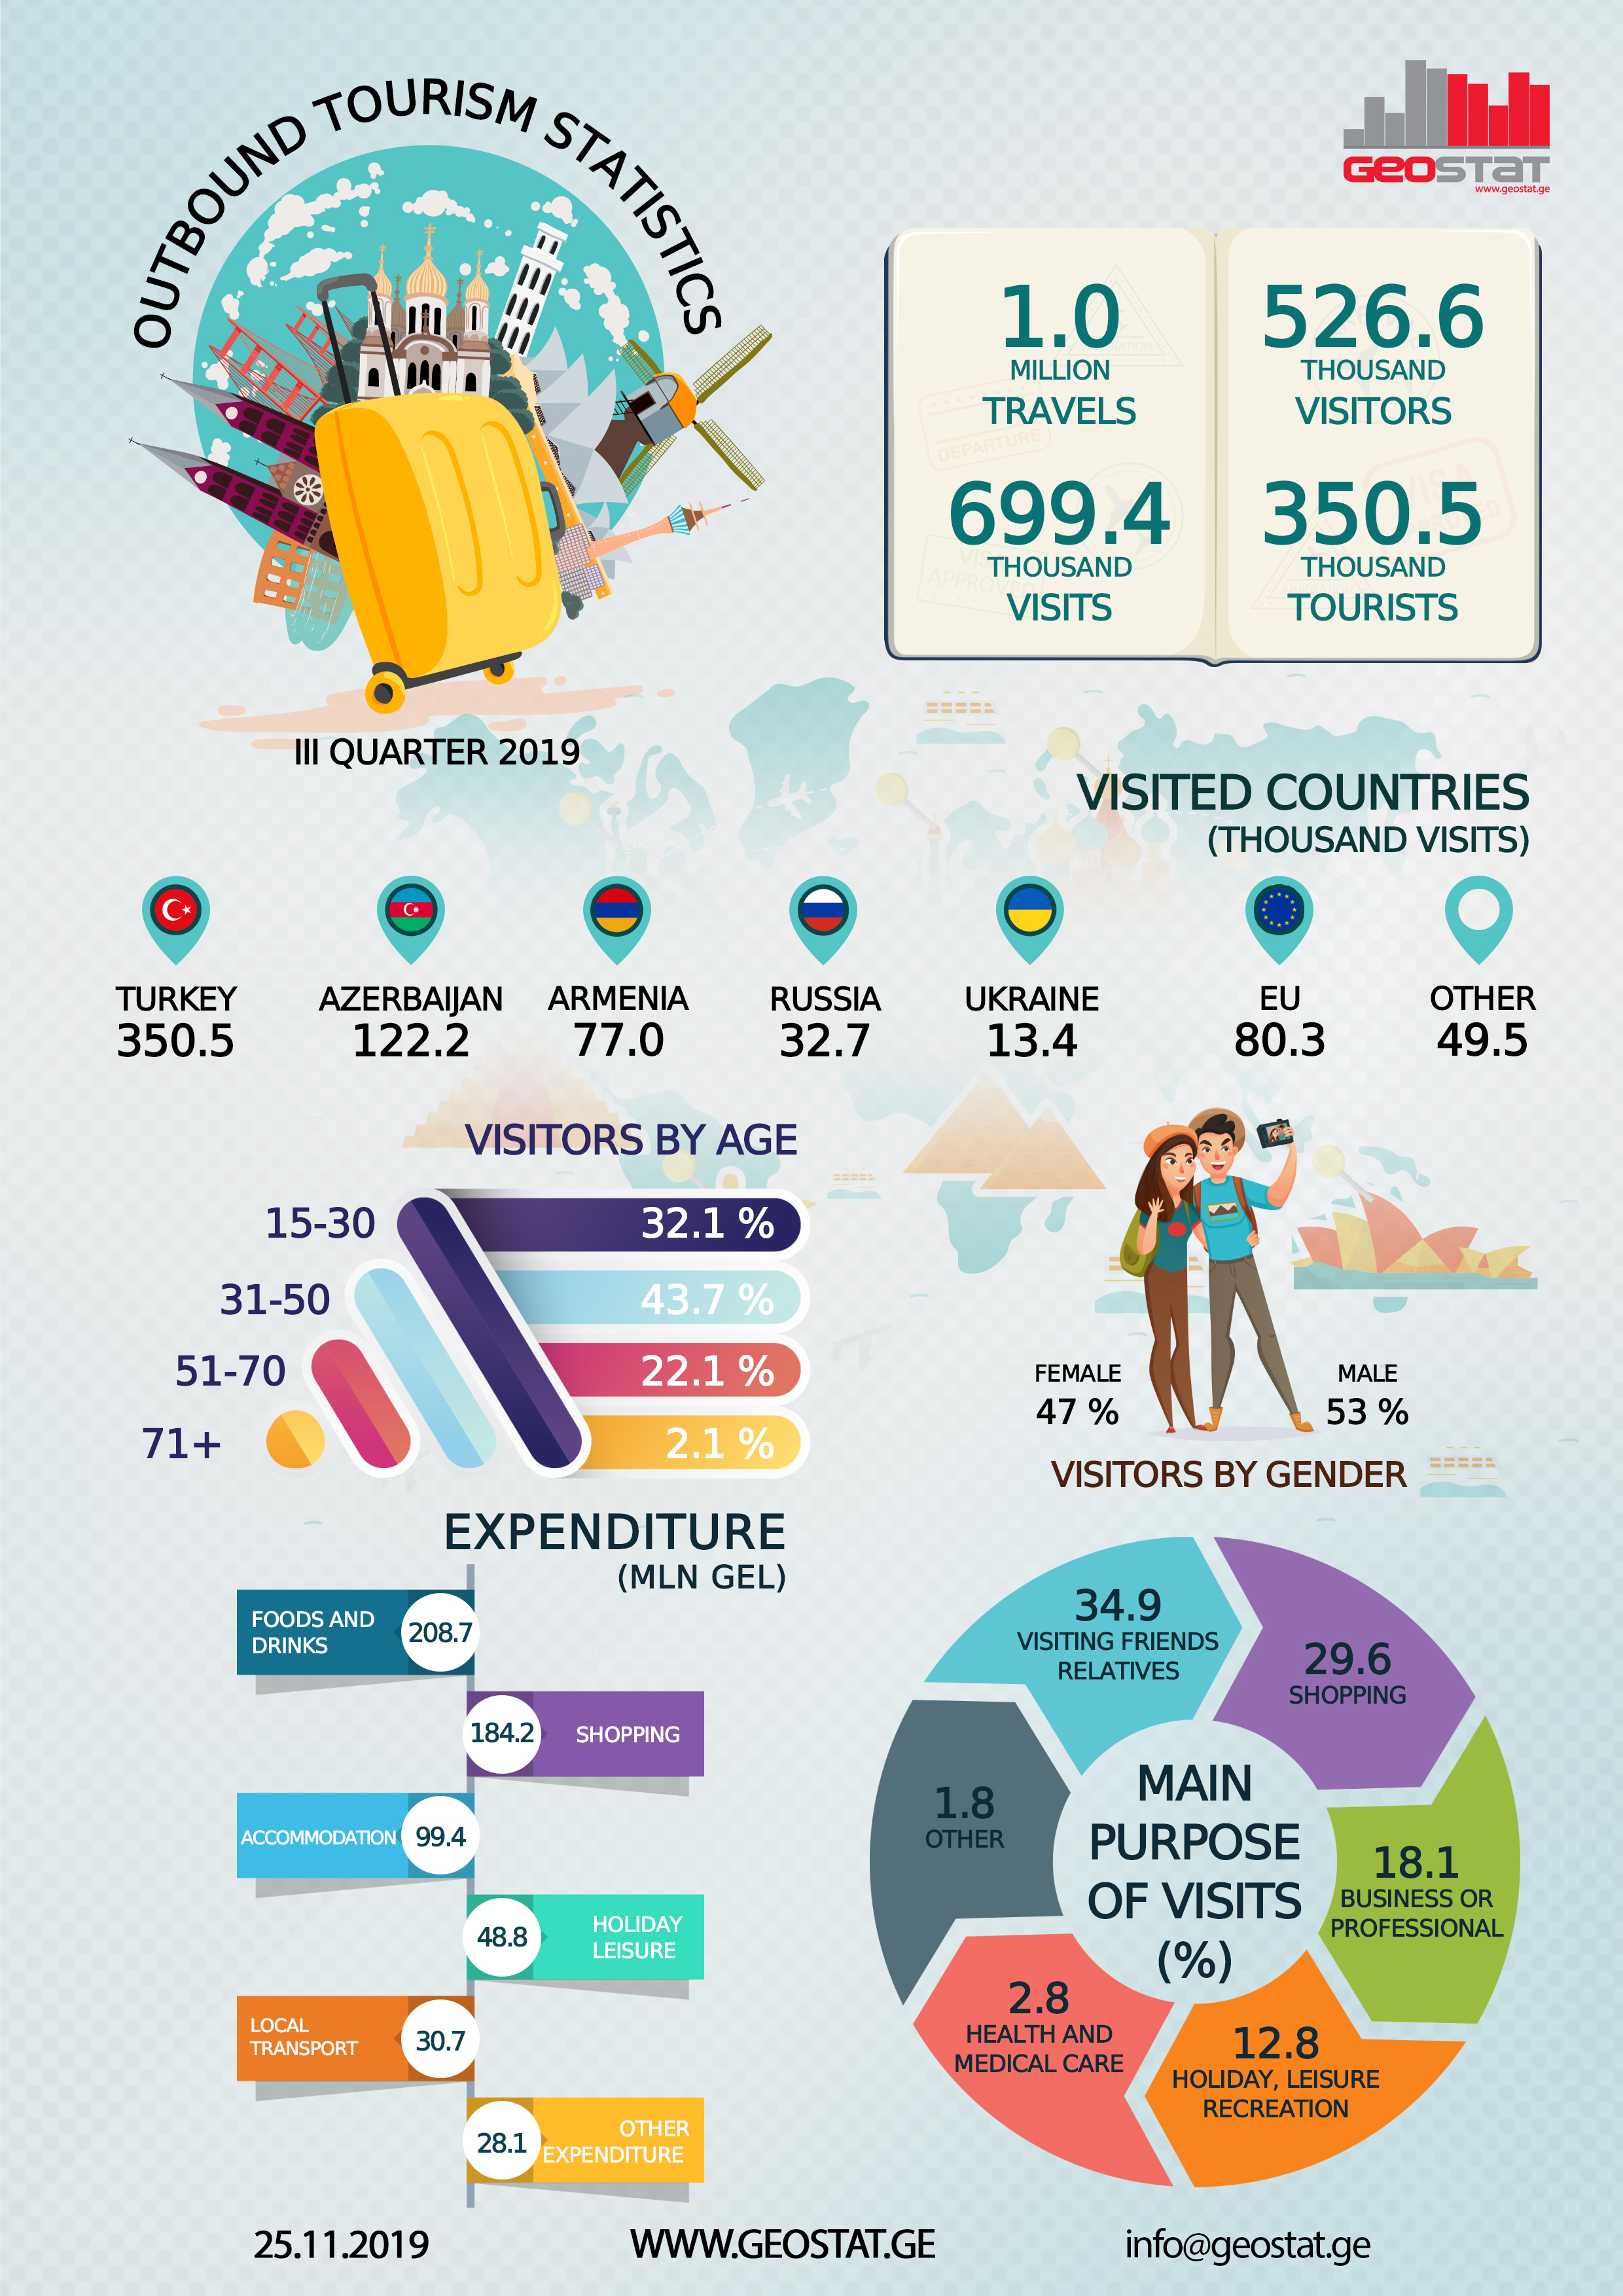 tourism statistics for georgia